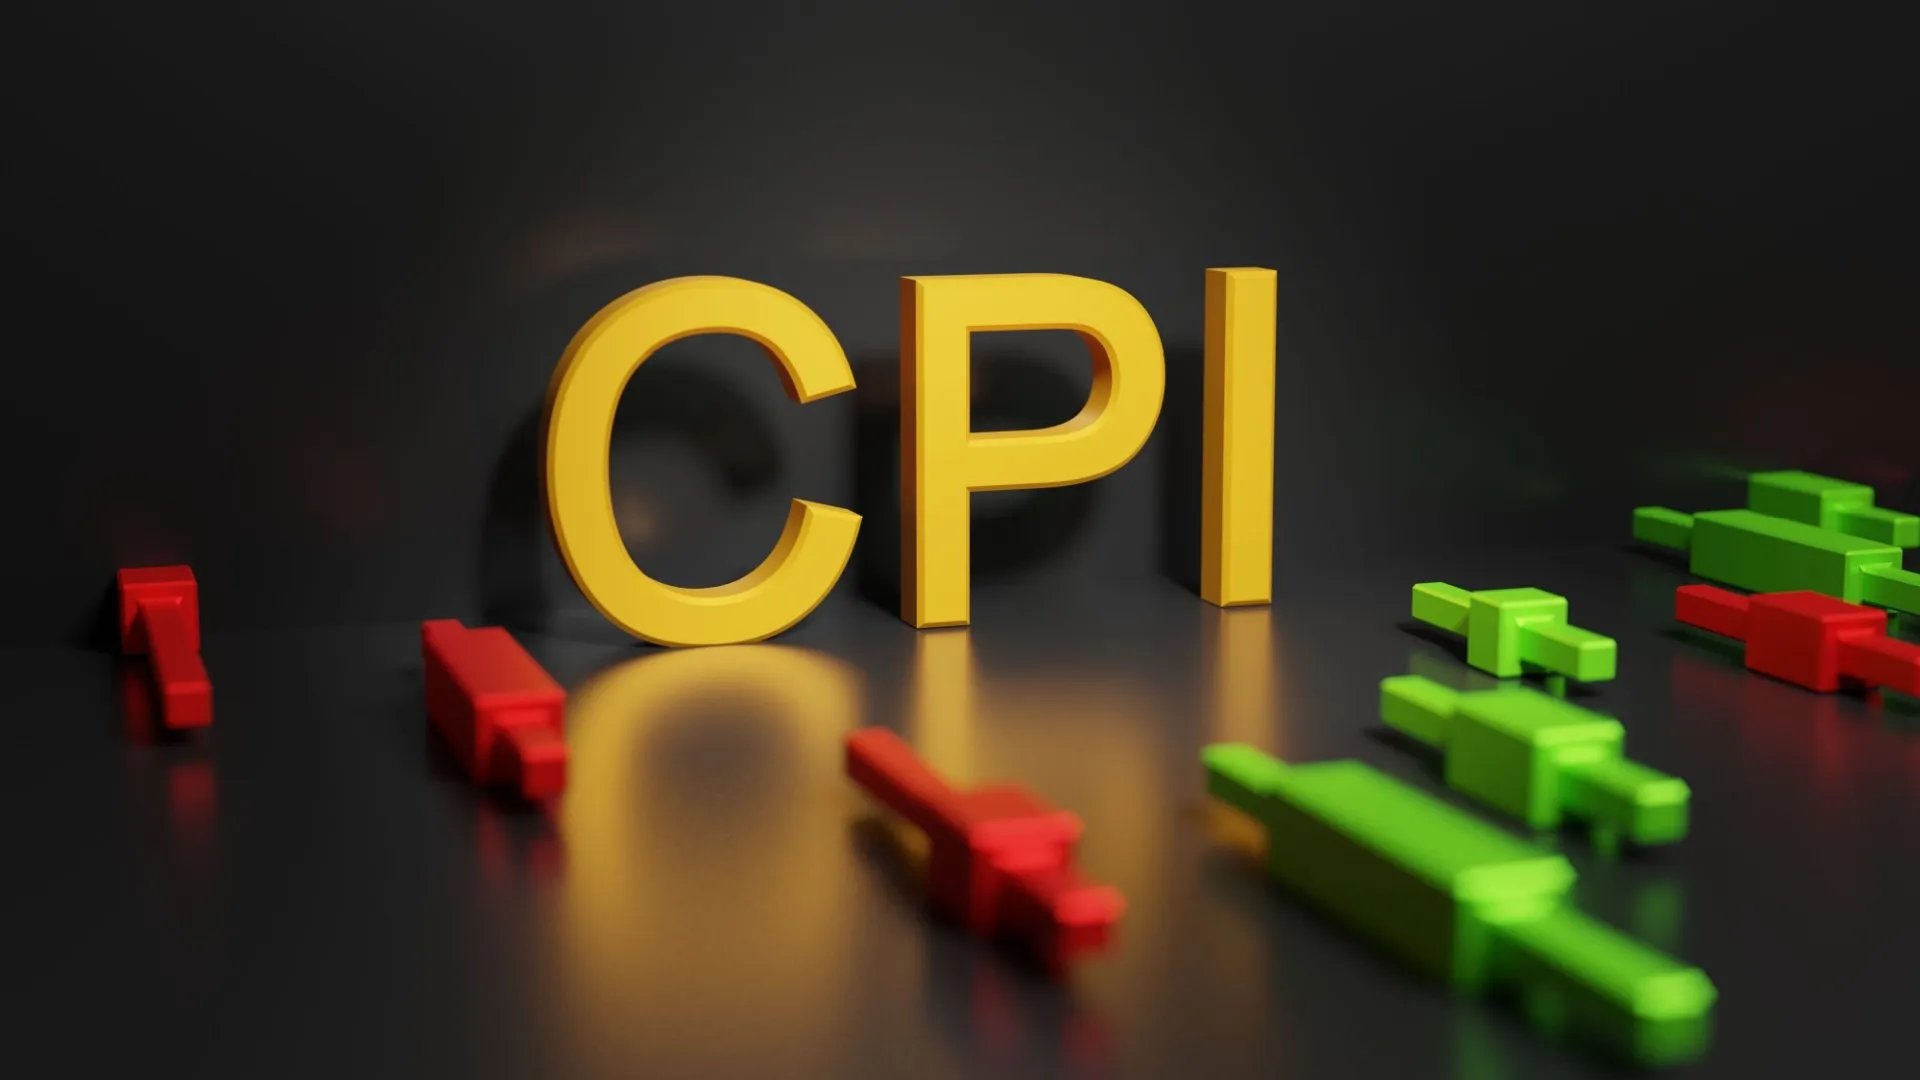 CPI・SPIとは? 構成する要素や計算方法を解説